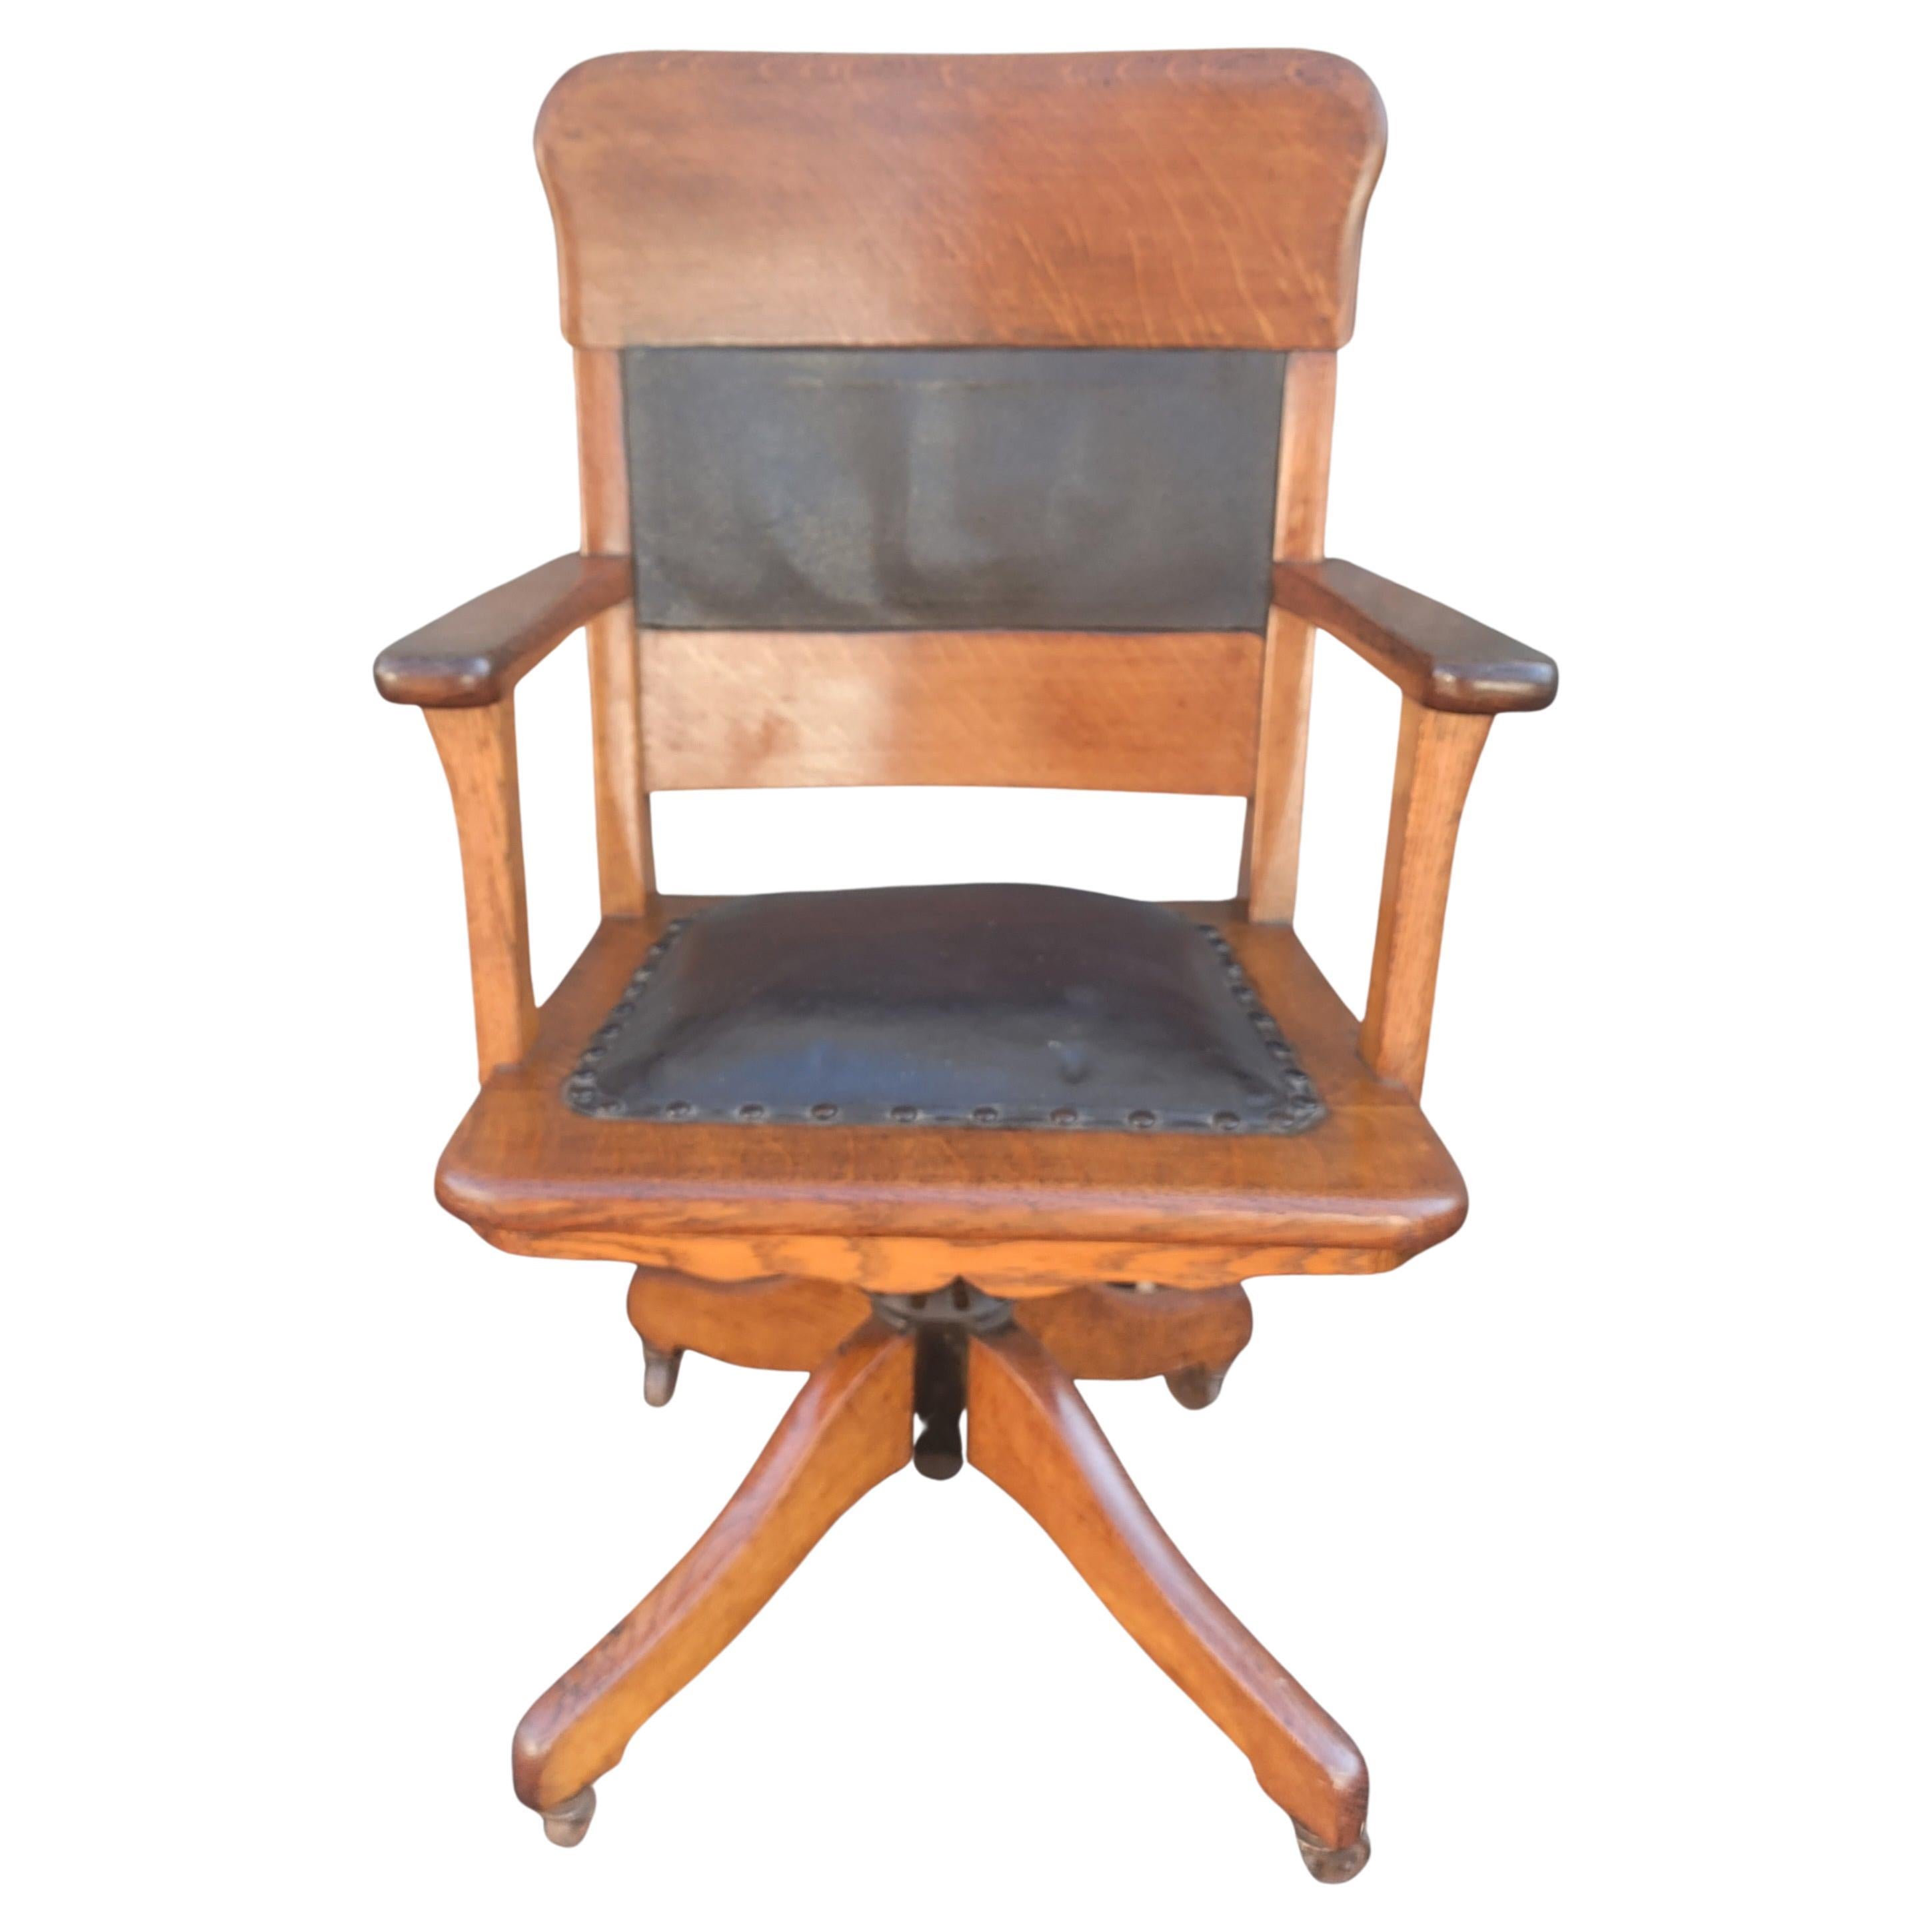 Nous avons le plaisir de vous proposer cette chaise de bureau pivotante en chêne massif avec siège et dossier en cuir, datant du début des années 1900, en état original. La chaise est finie dans une teinture de chêne foncé. Il est doté d'accoudoirs